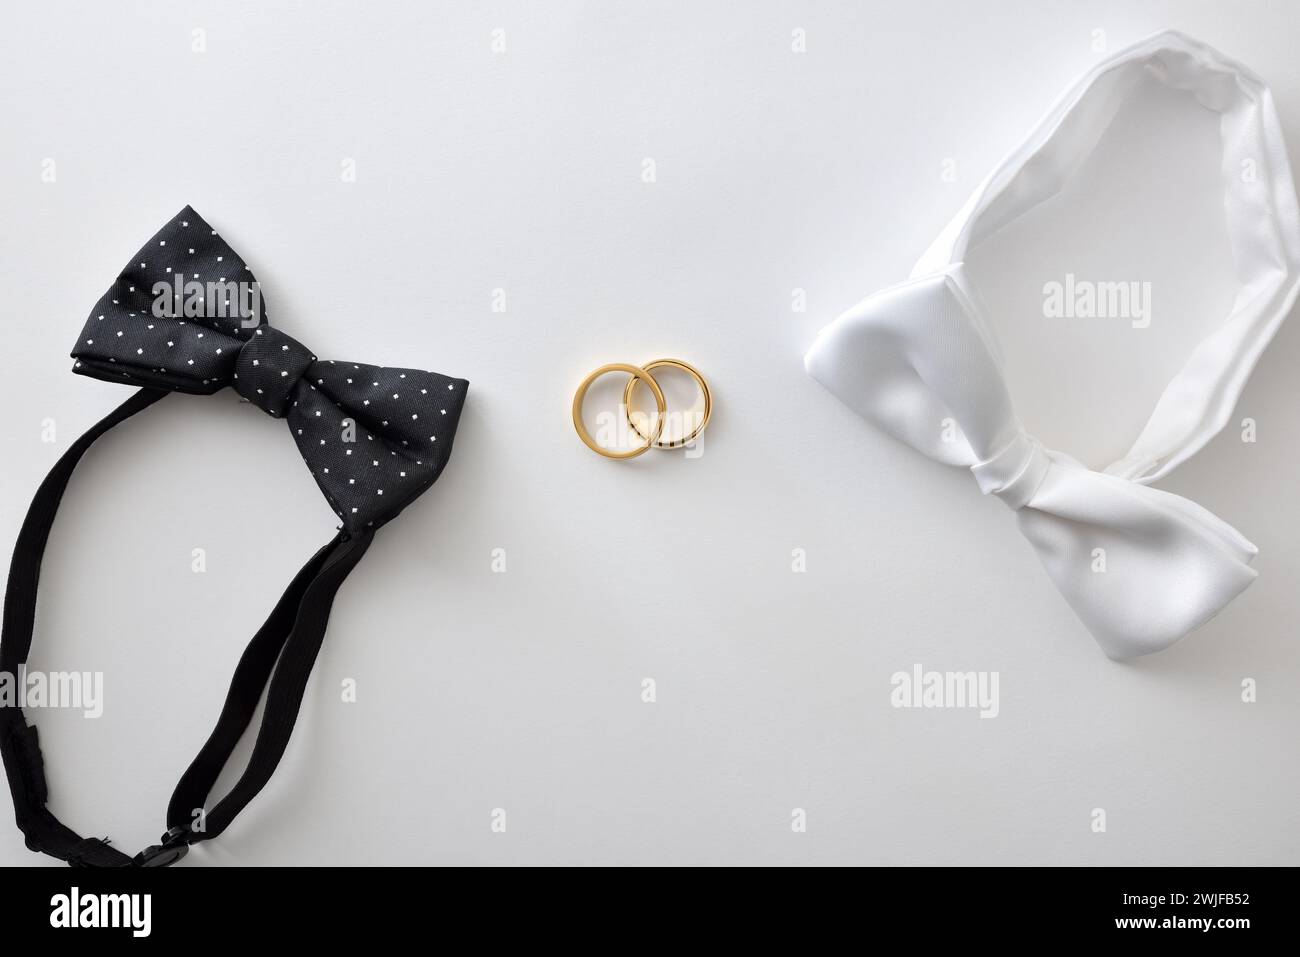 Concept de mariage gay avec noeud papillon noir avec pois et blanc sur les côtés des anneaux de mariage au milieu. Vue de dessus. Banque D'Images